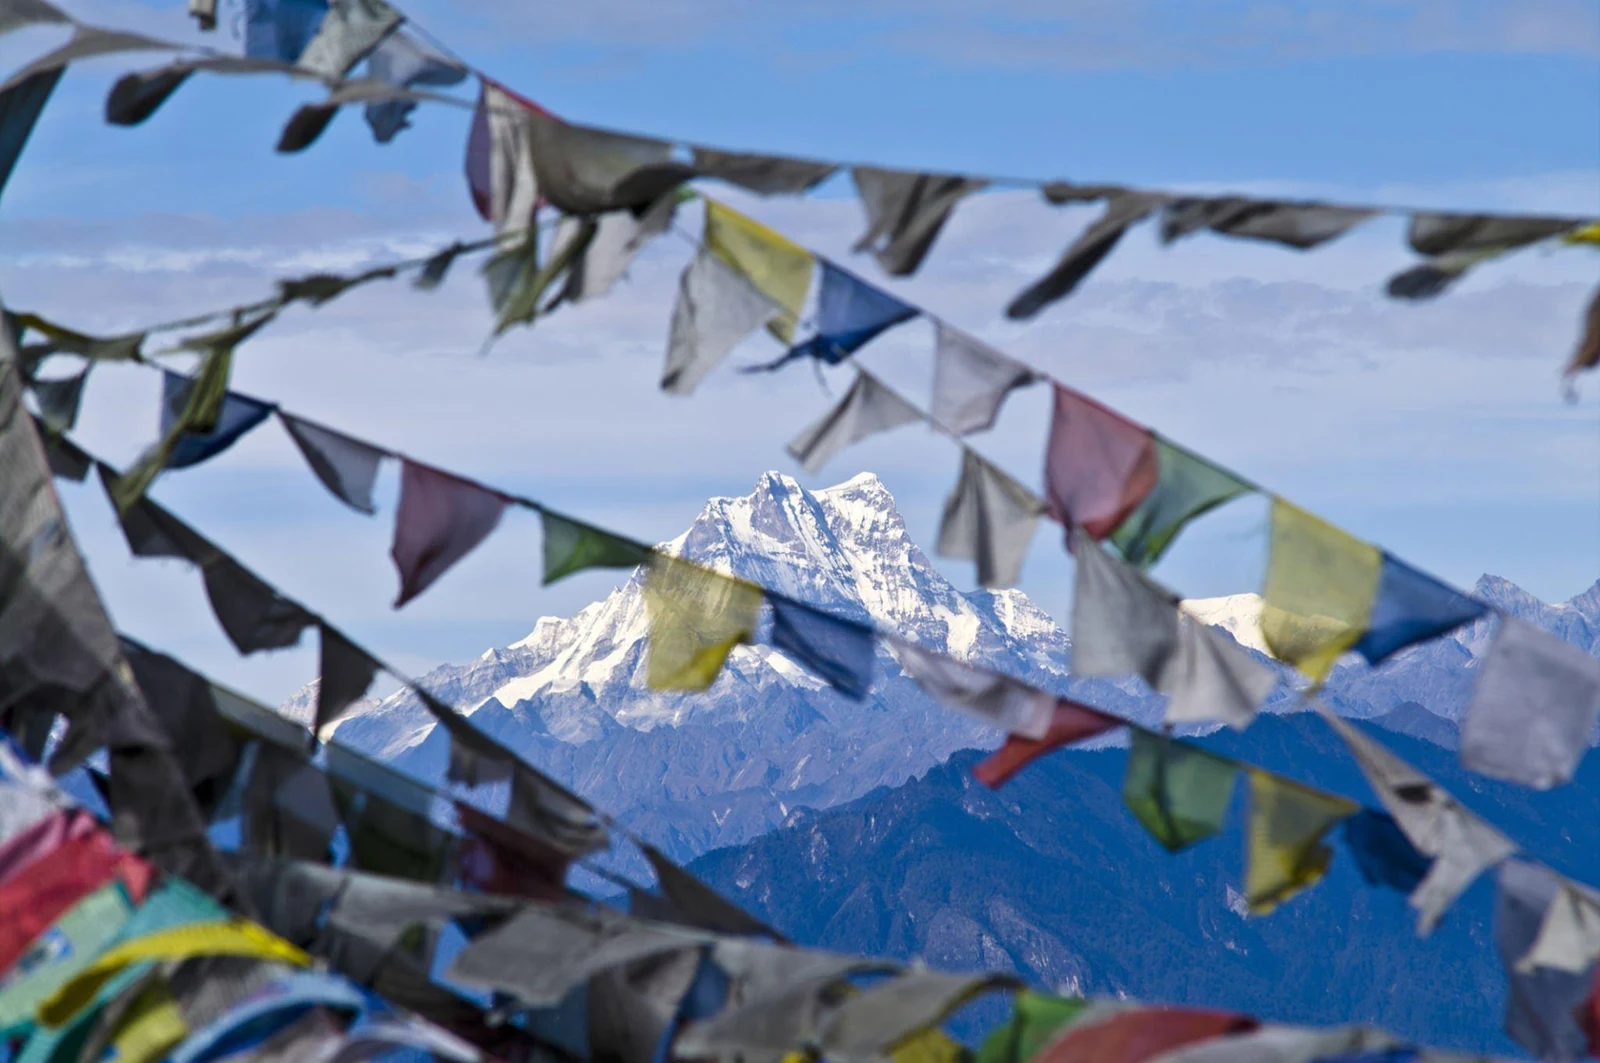 Mount Masagang viewed through Himalayan prayer flags